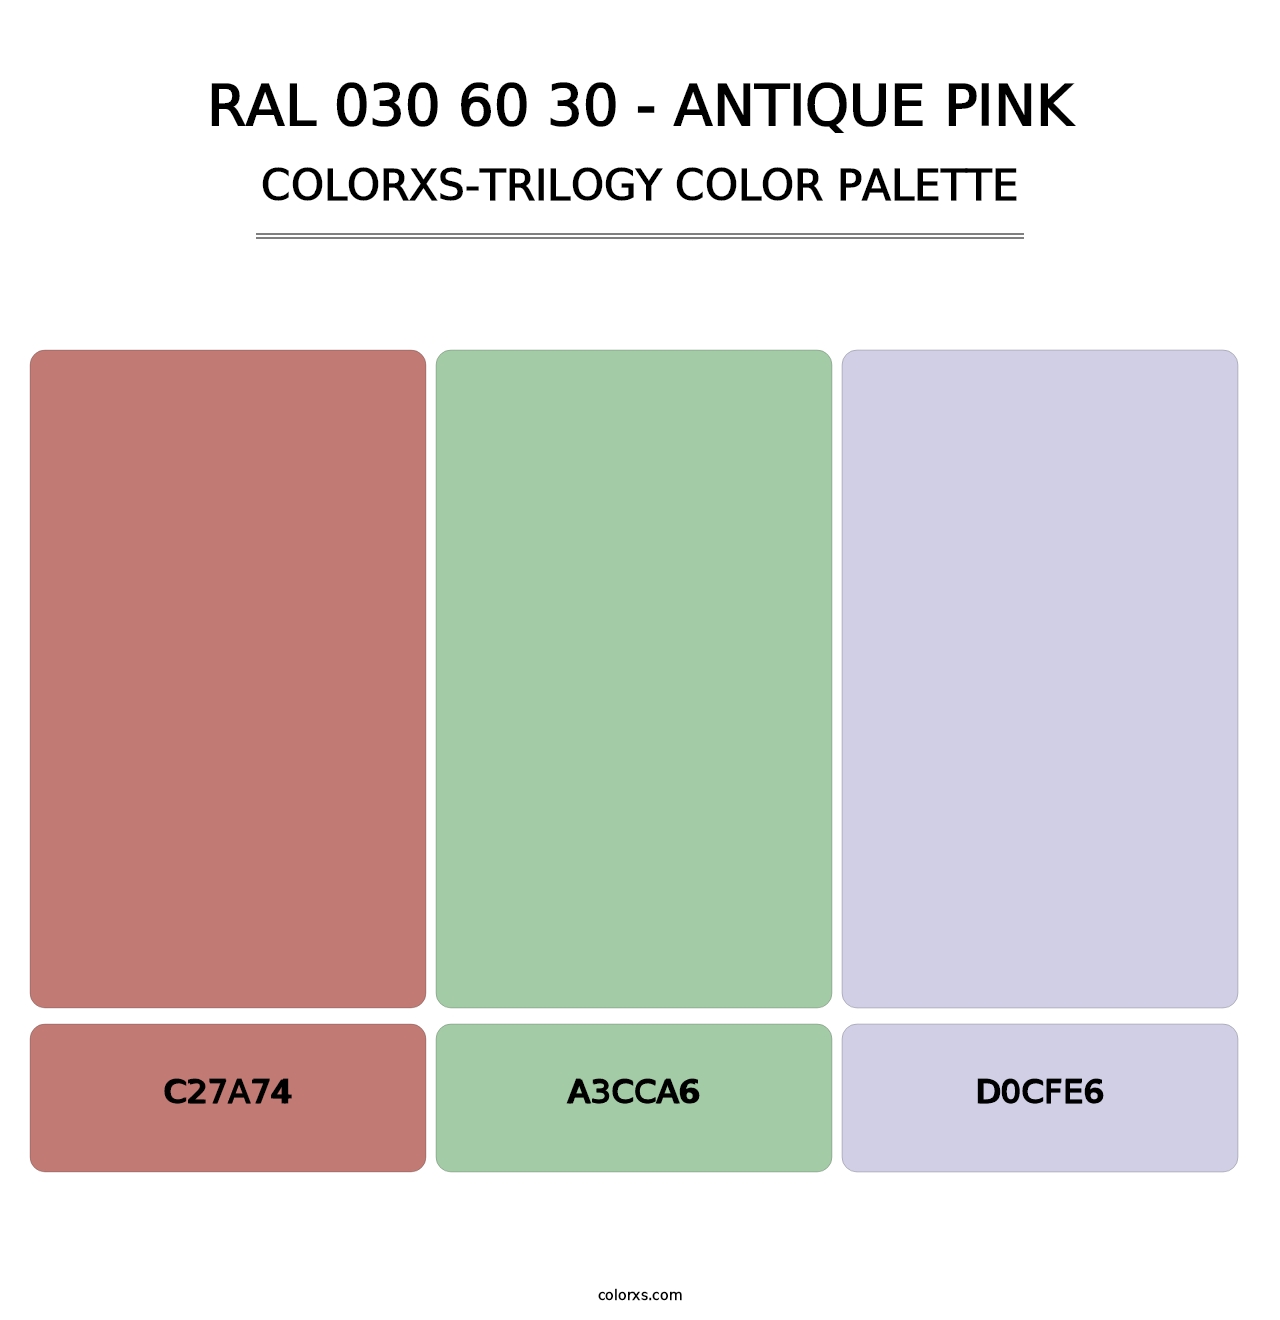 RAL 030 60 30 - Antique Pink - Colorxs Trilogy Palette